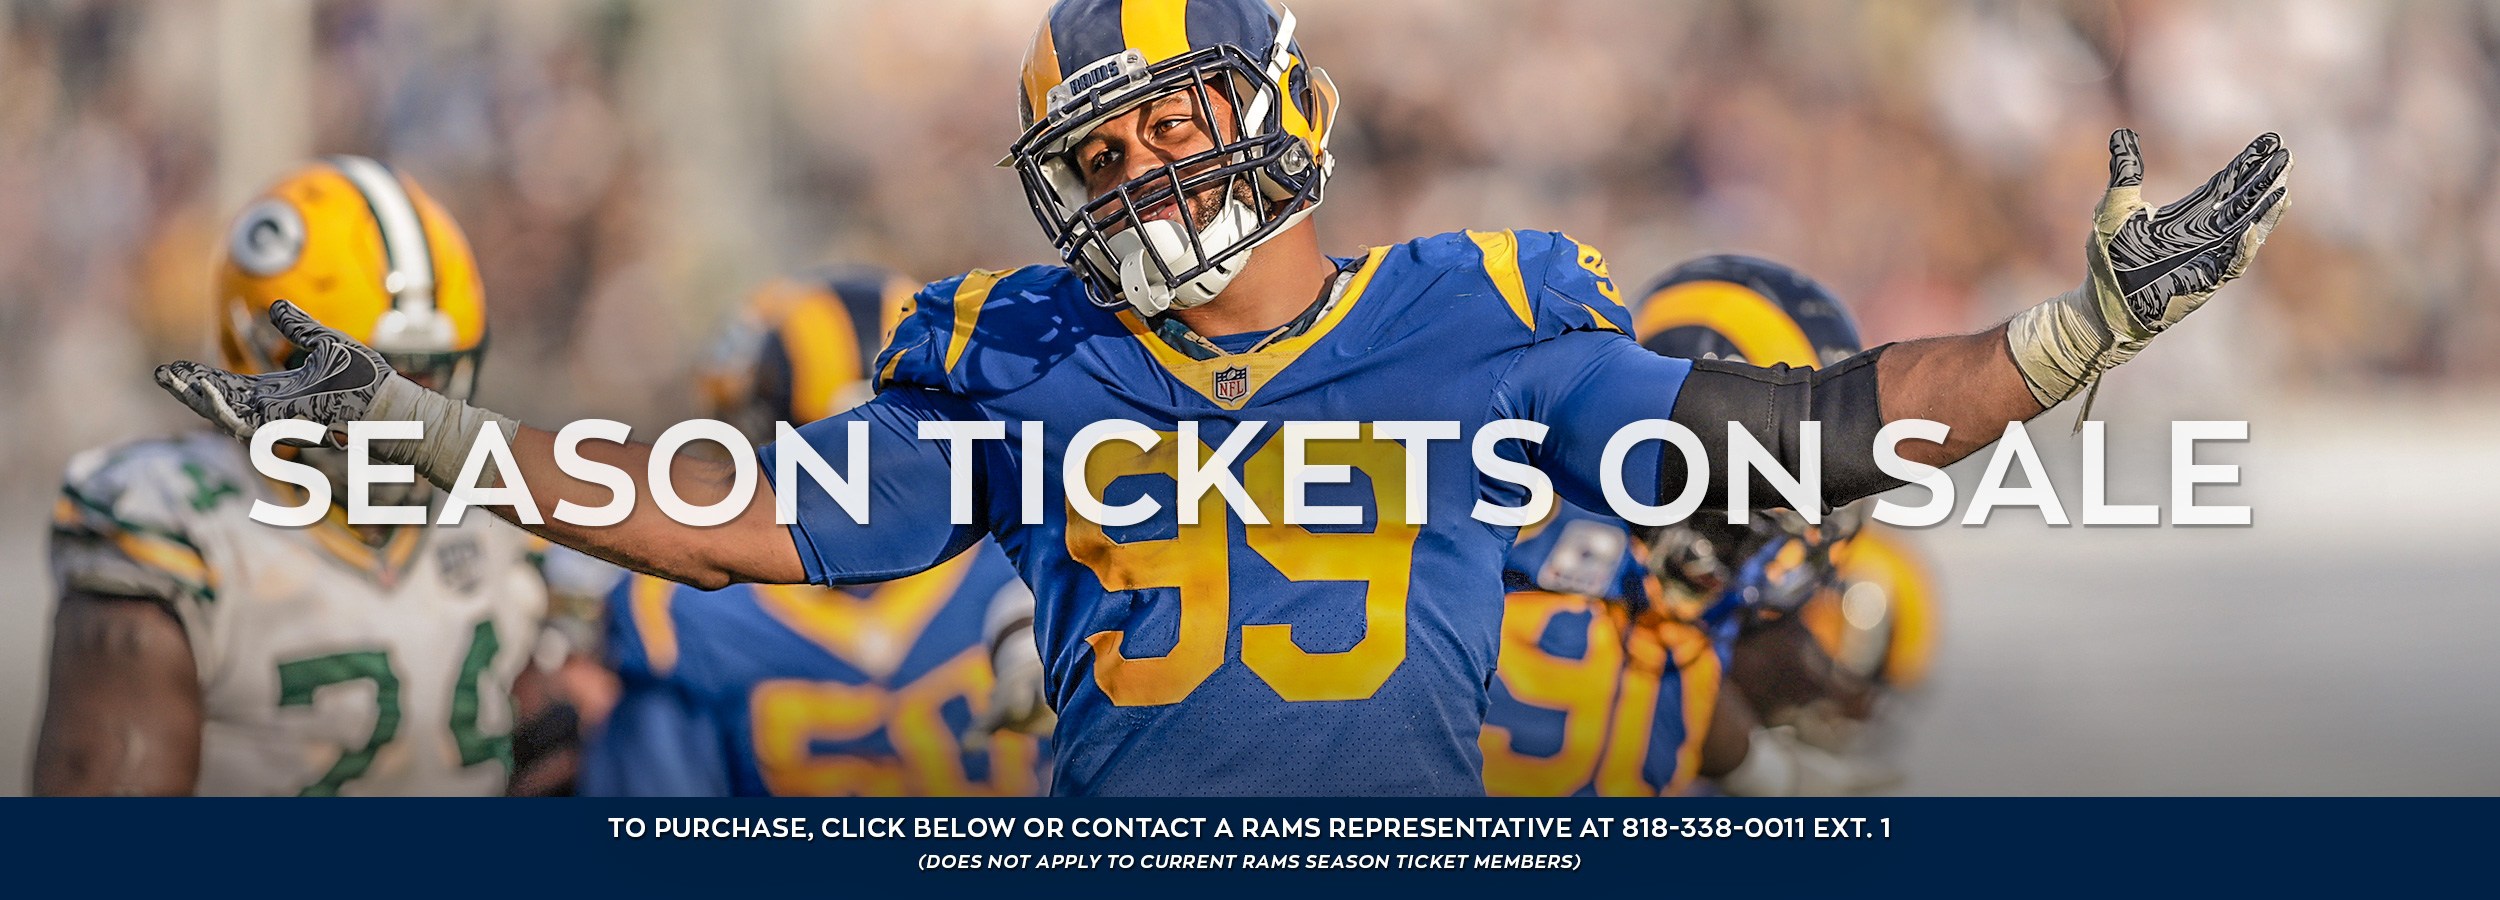 Rams Season Tickets Los Angeles Rams